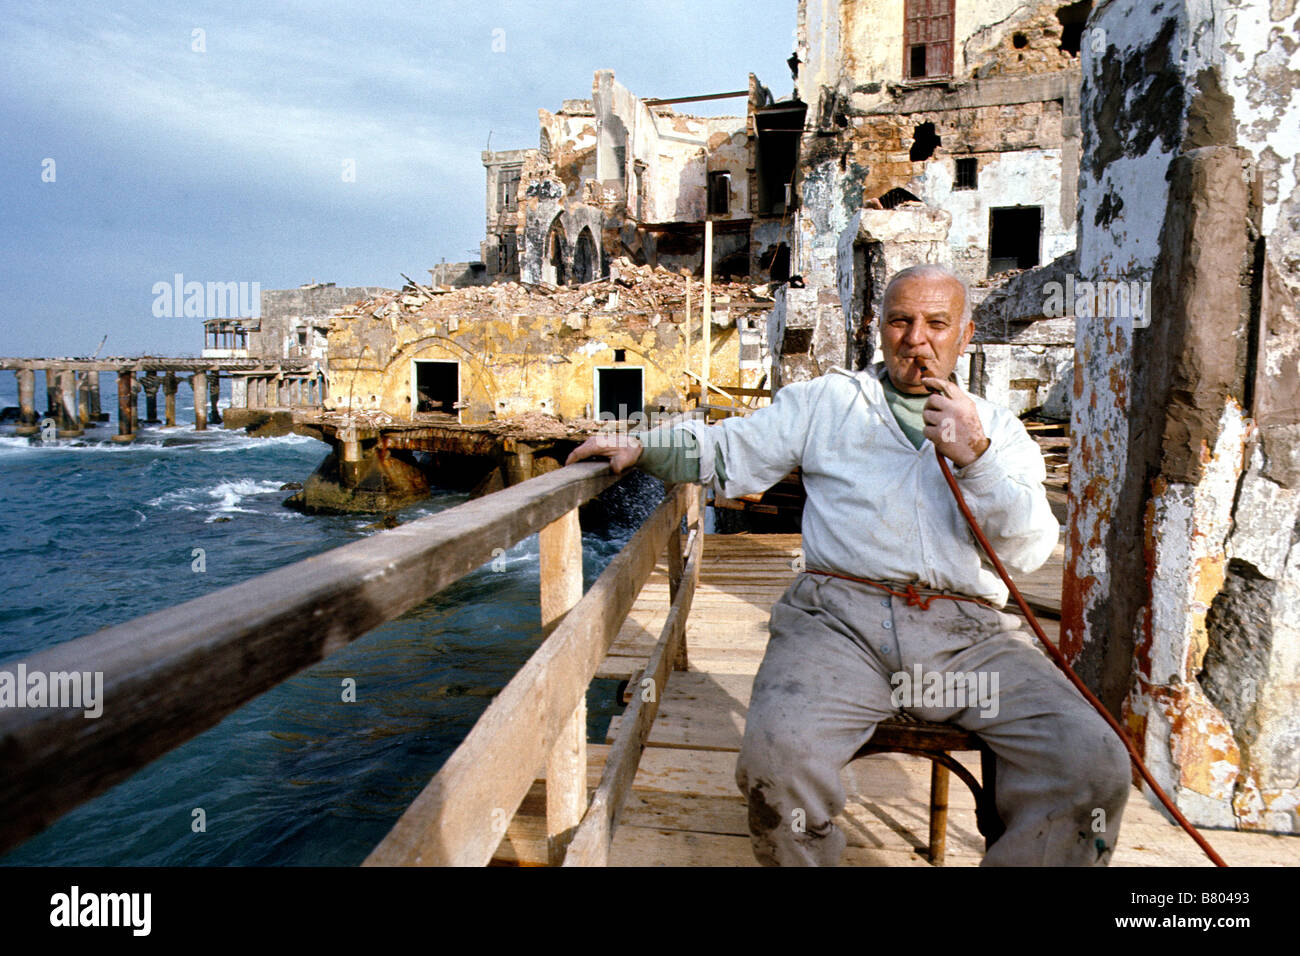 Vecchio Beirut, Libano presi subito dopo la guerra civile conclusa intorno al 1990. Uomo seduto sul lungomare tra edifici in rovina. Foto Stock